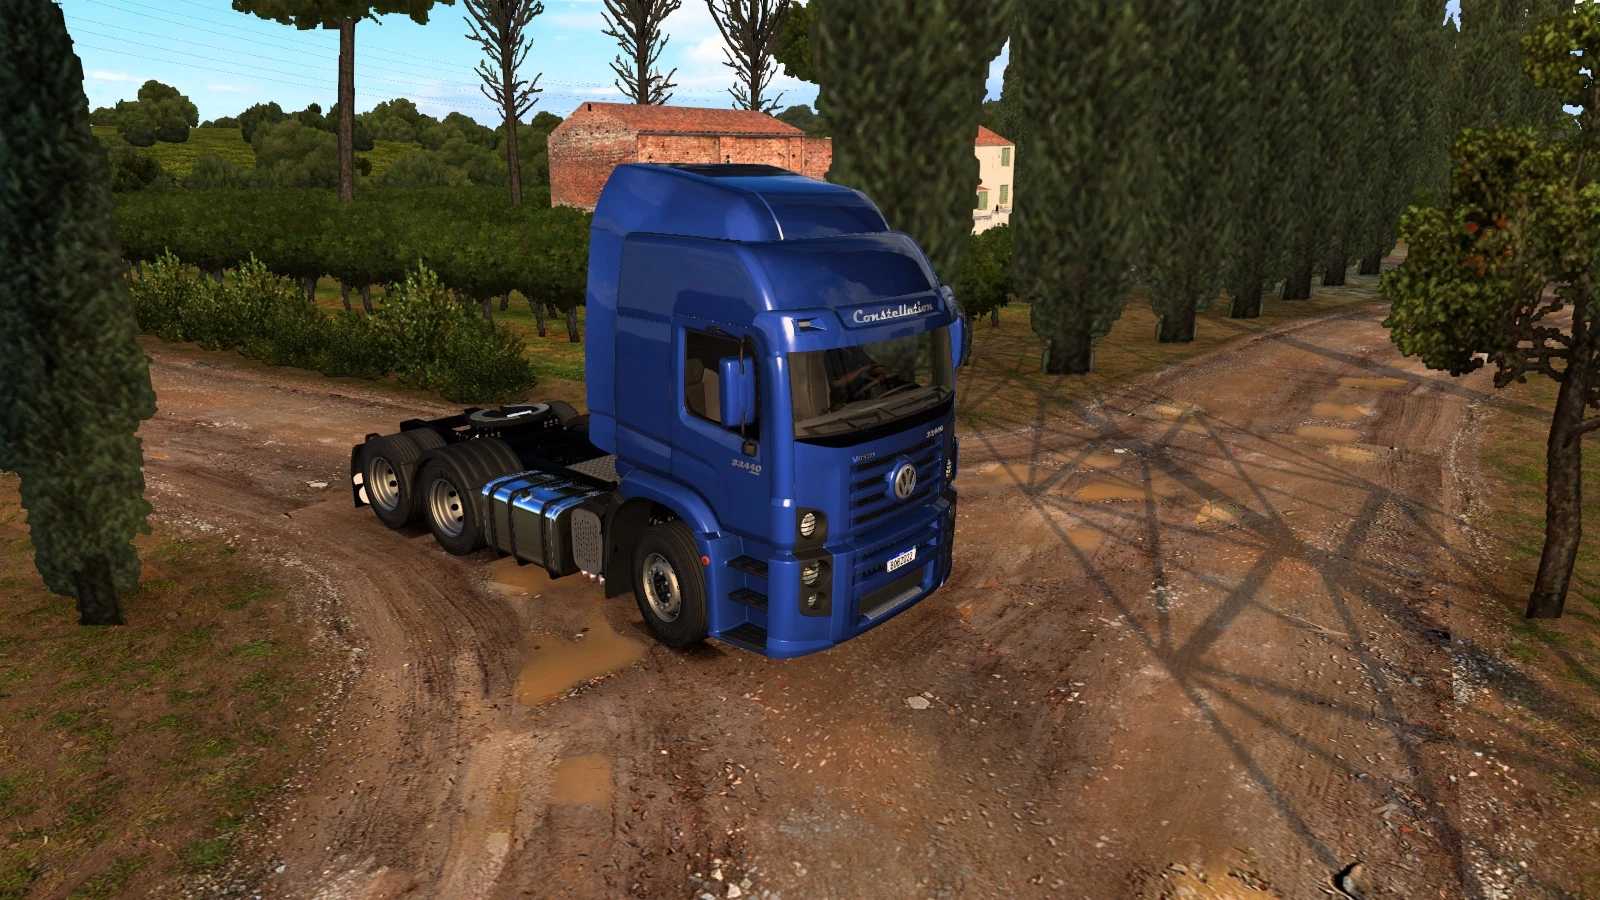 ets2 truck lkw simulator mods free download Volkswagen Konstellation 1.44